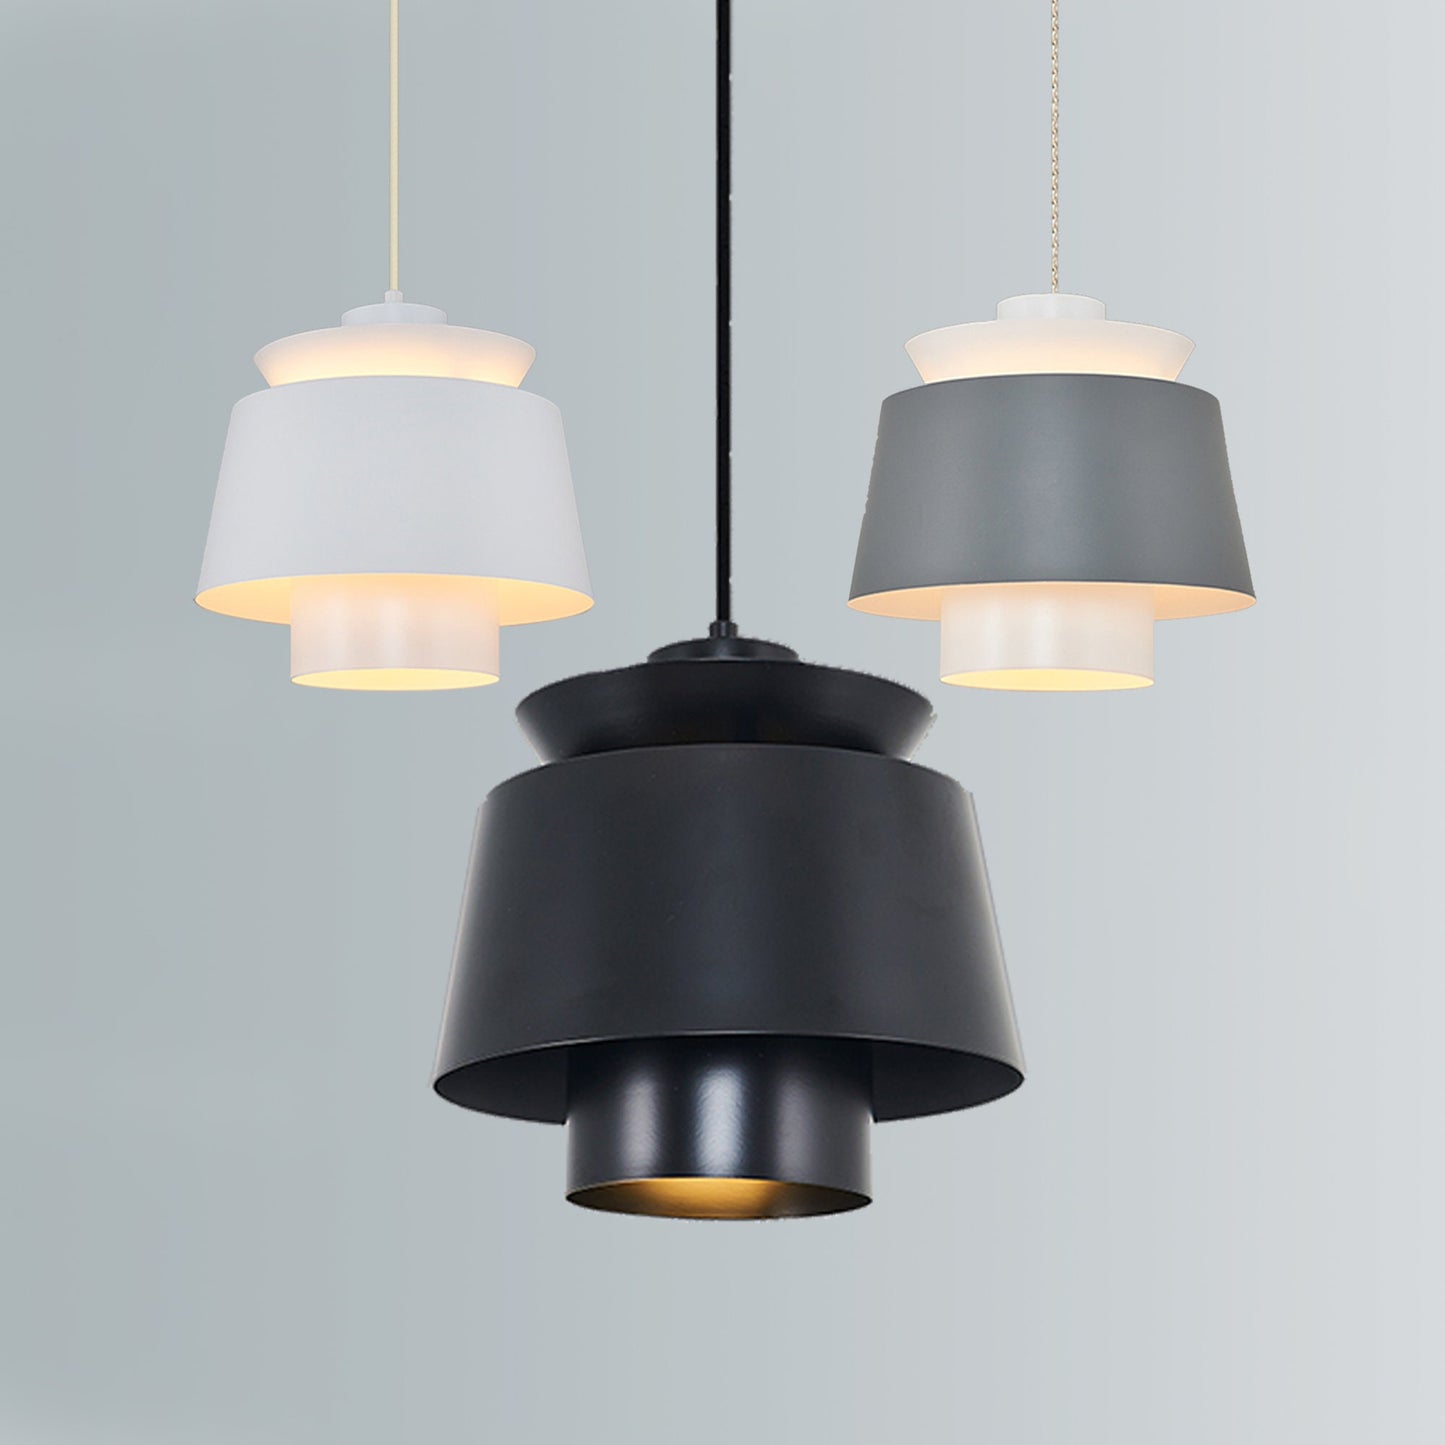 MODERN LIGHTING, Ceiling Lamp, White Fixtures, Black F��xture, Modern Lamp, Gray Light, Modern ceiling, Chandelier Light, Modern Ceiling Lamp